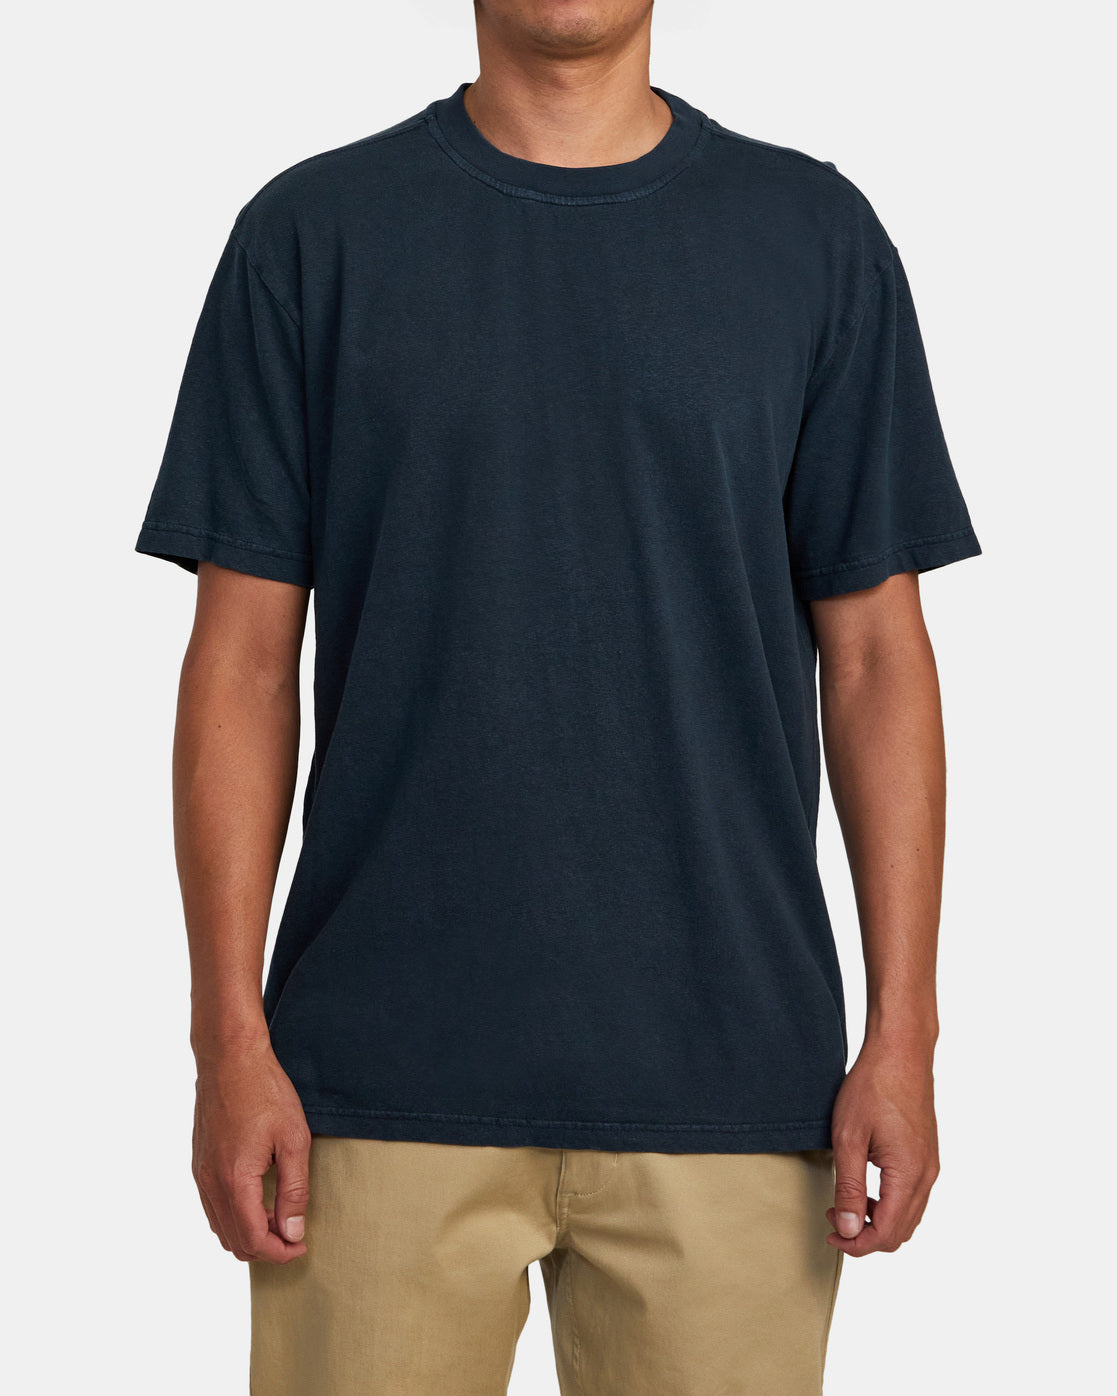 RVCA Hi-Grade Hemp T-Shirt - Indigo - M